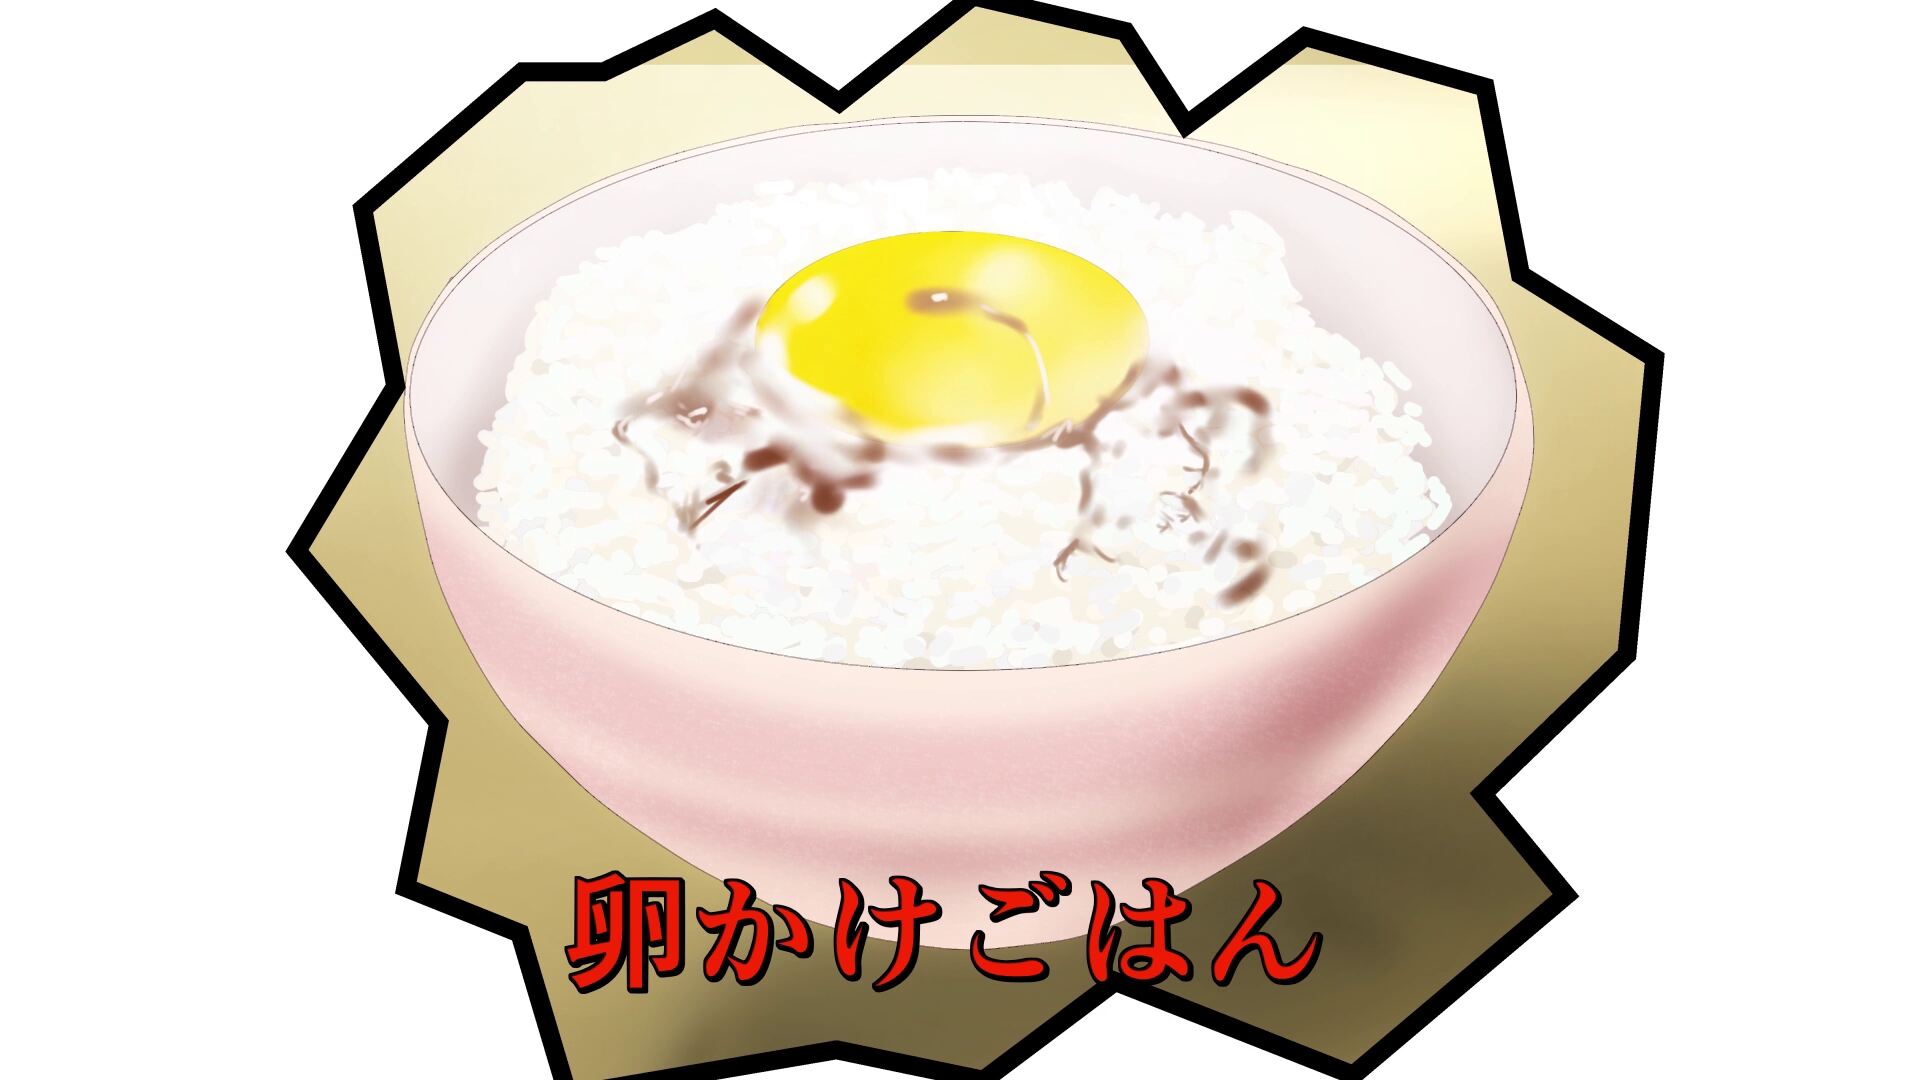 外国人 日本のアニメに出てくる卵かけご飯食べてみたら美味しかった 海外の反応 あにまんch